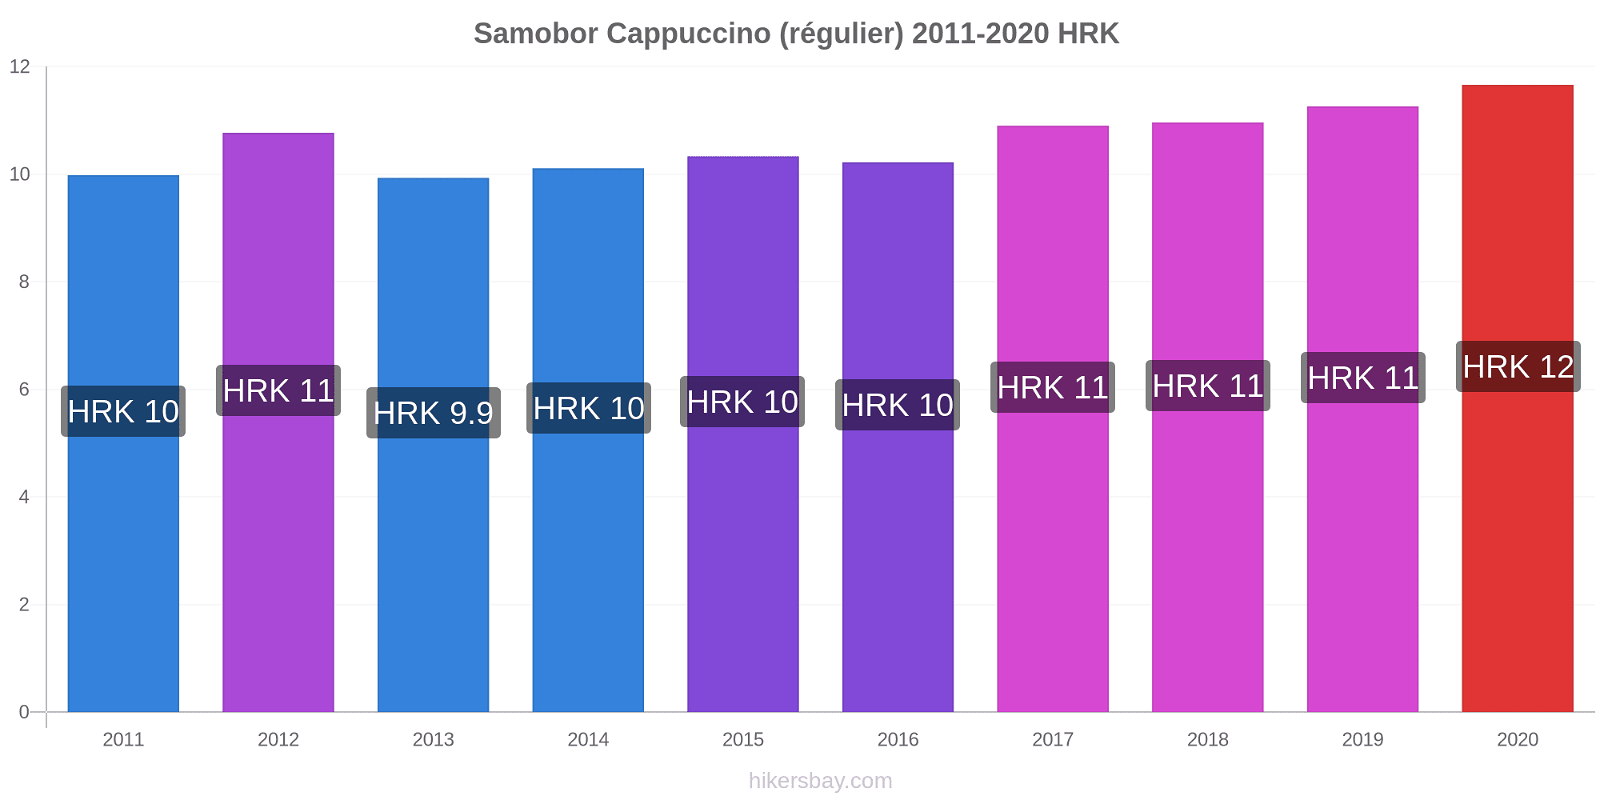 Samobor changements de prix Cappuccino (régulier) hikersbay.com